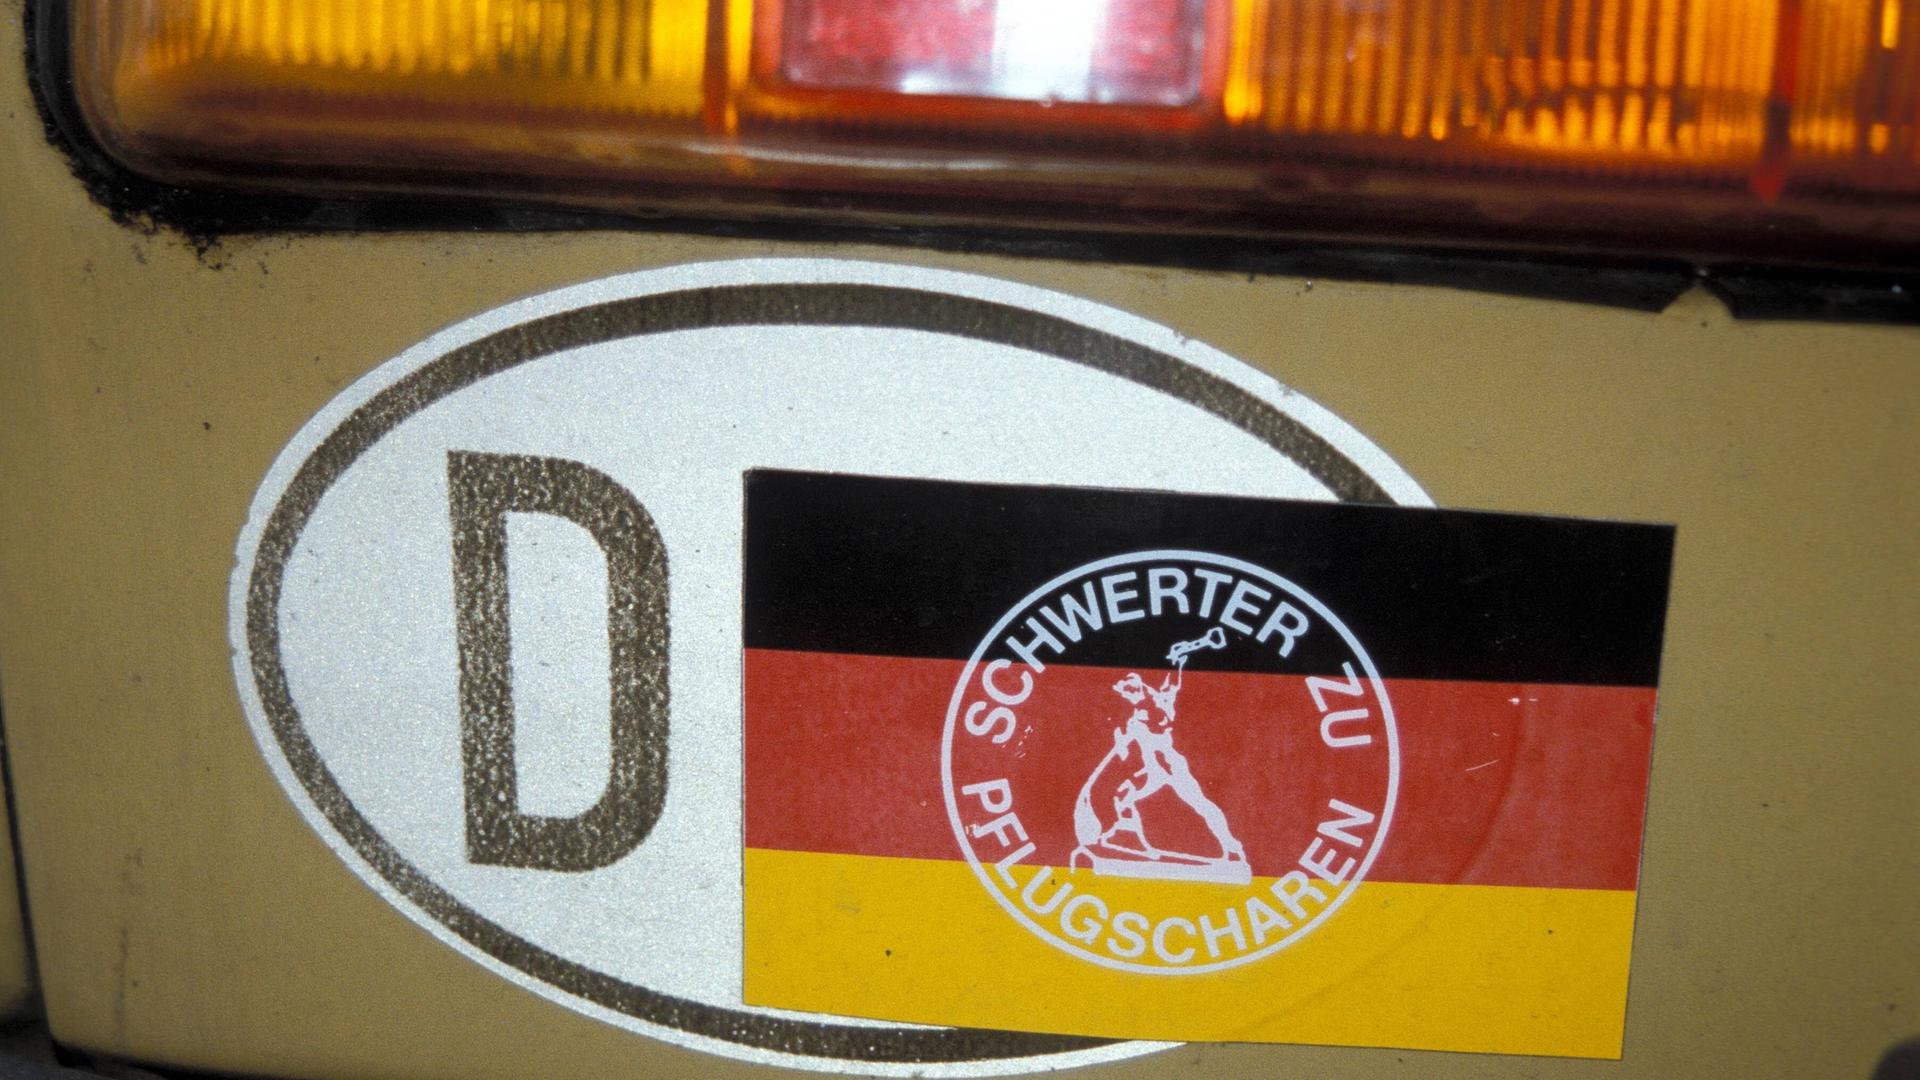 Ein DDR-Kennzeichen wurde mit einem Sticker mit der Aufschrift "Schwerter zu Pflugscharen" überklebt, sodass nur noch D für Deutschland zu lesen ist.